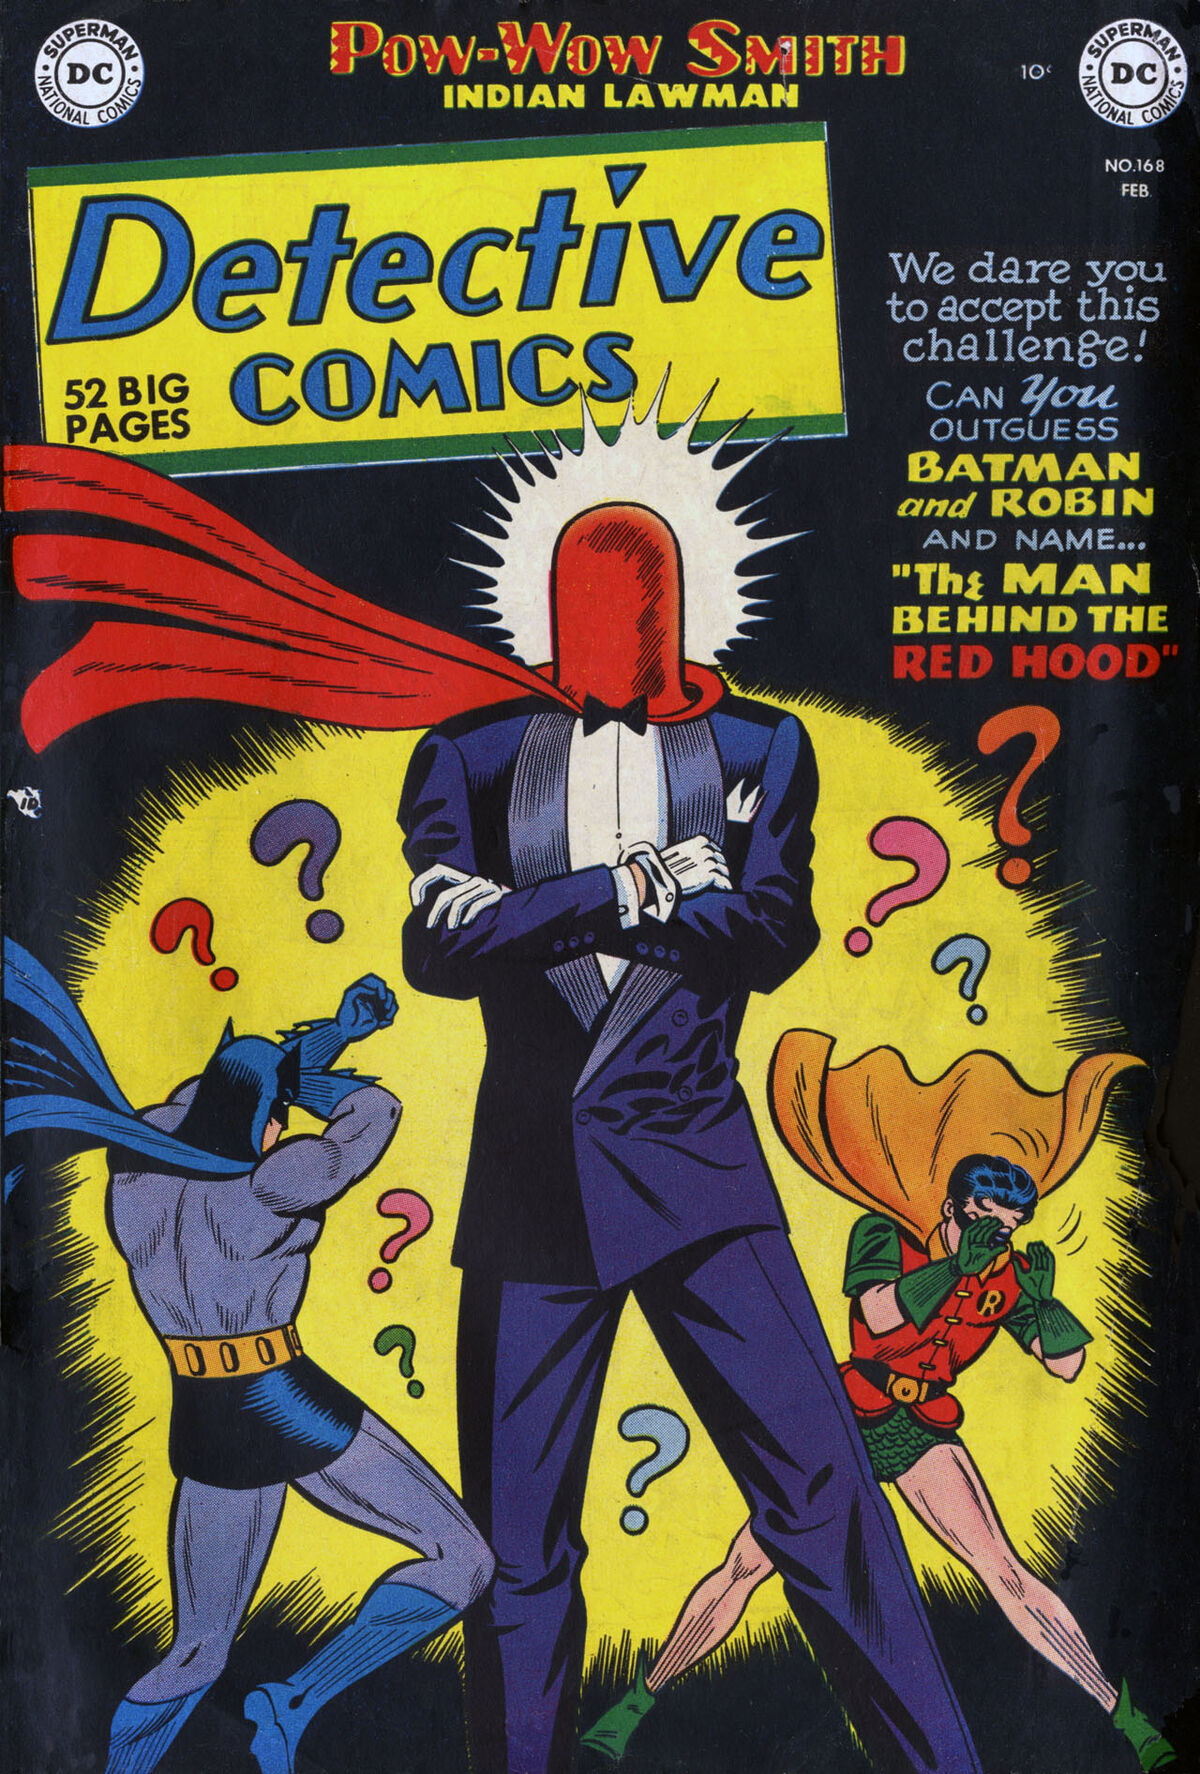 Batman  Batman comic art, Batman artwork, Batman detective comics